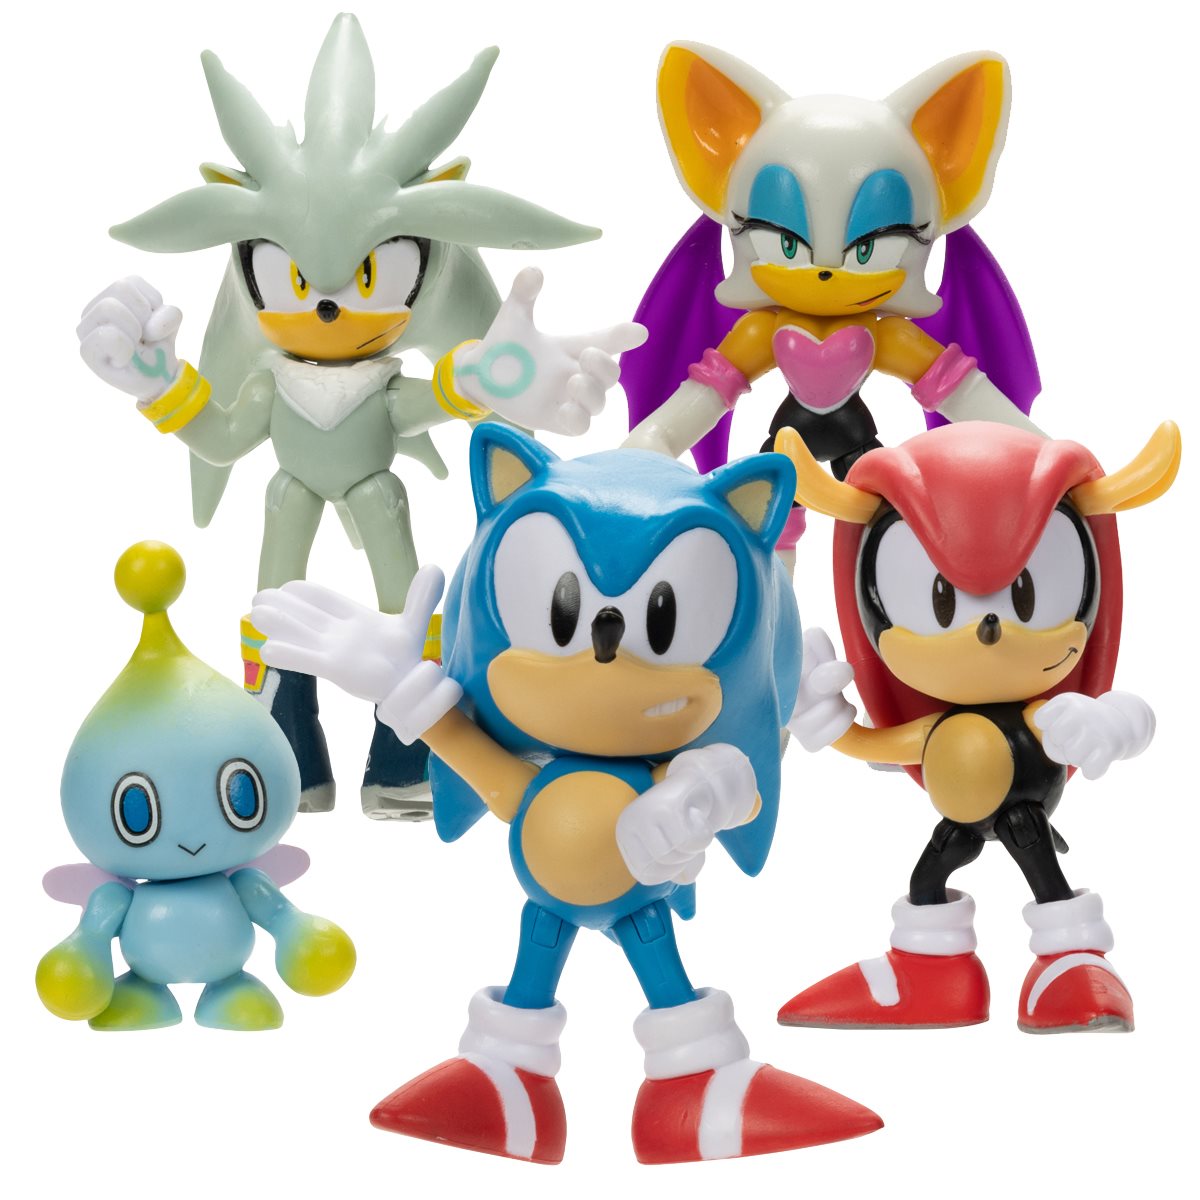 ❤ Figura Sonic the Hedgehog Jakks